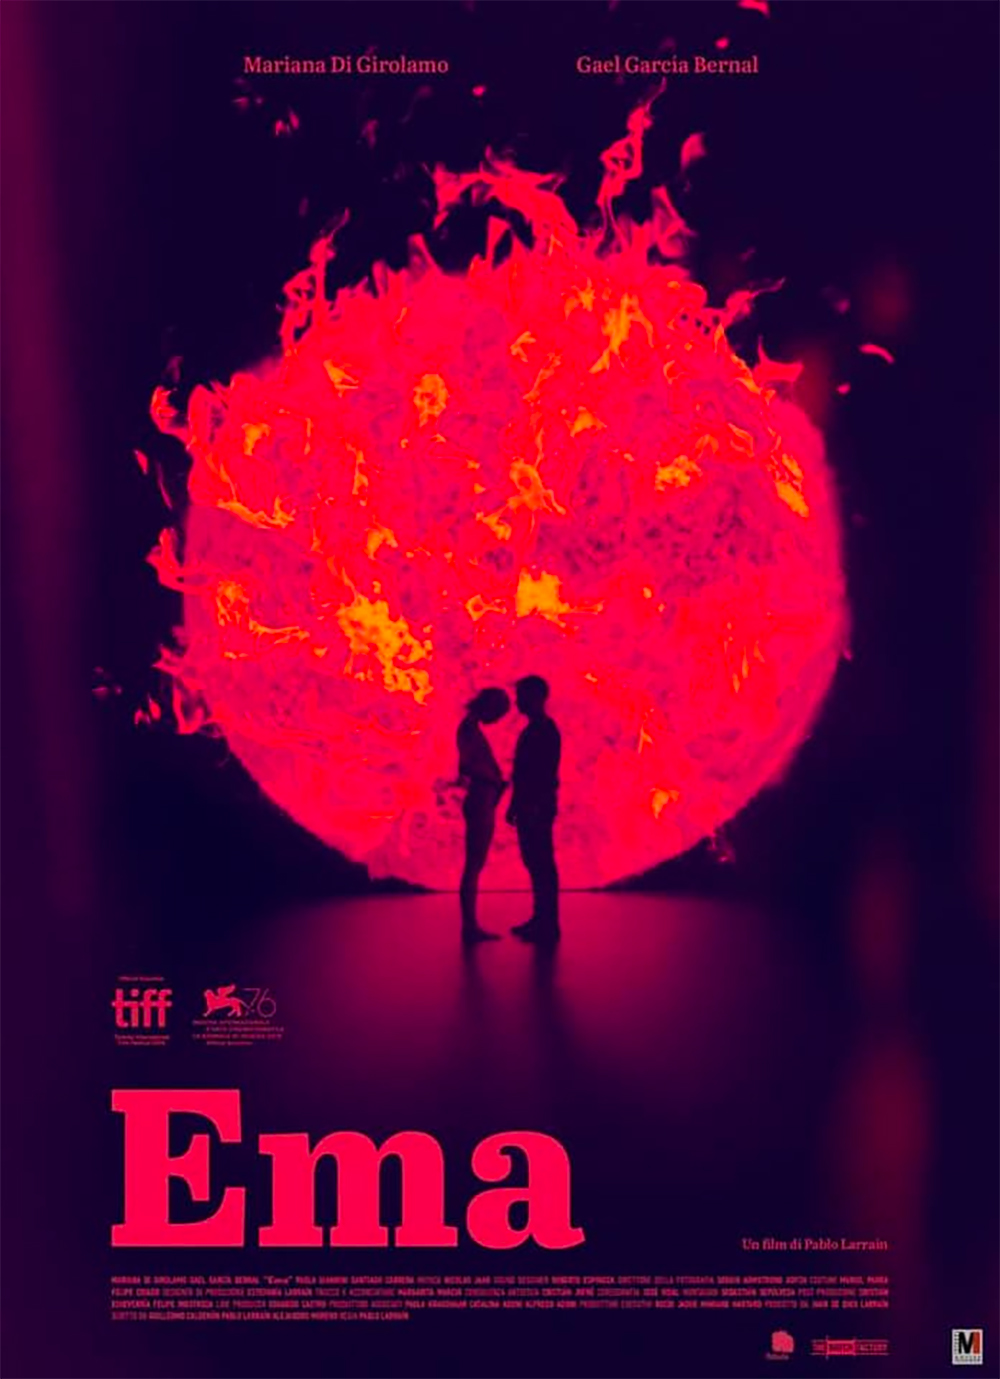  Dall'articolo: Ema, il poster italiano del film.